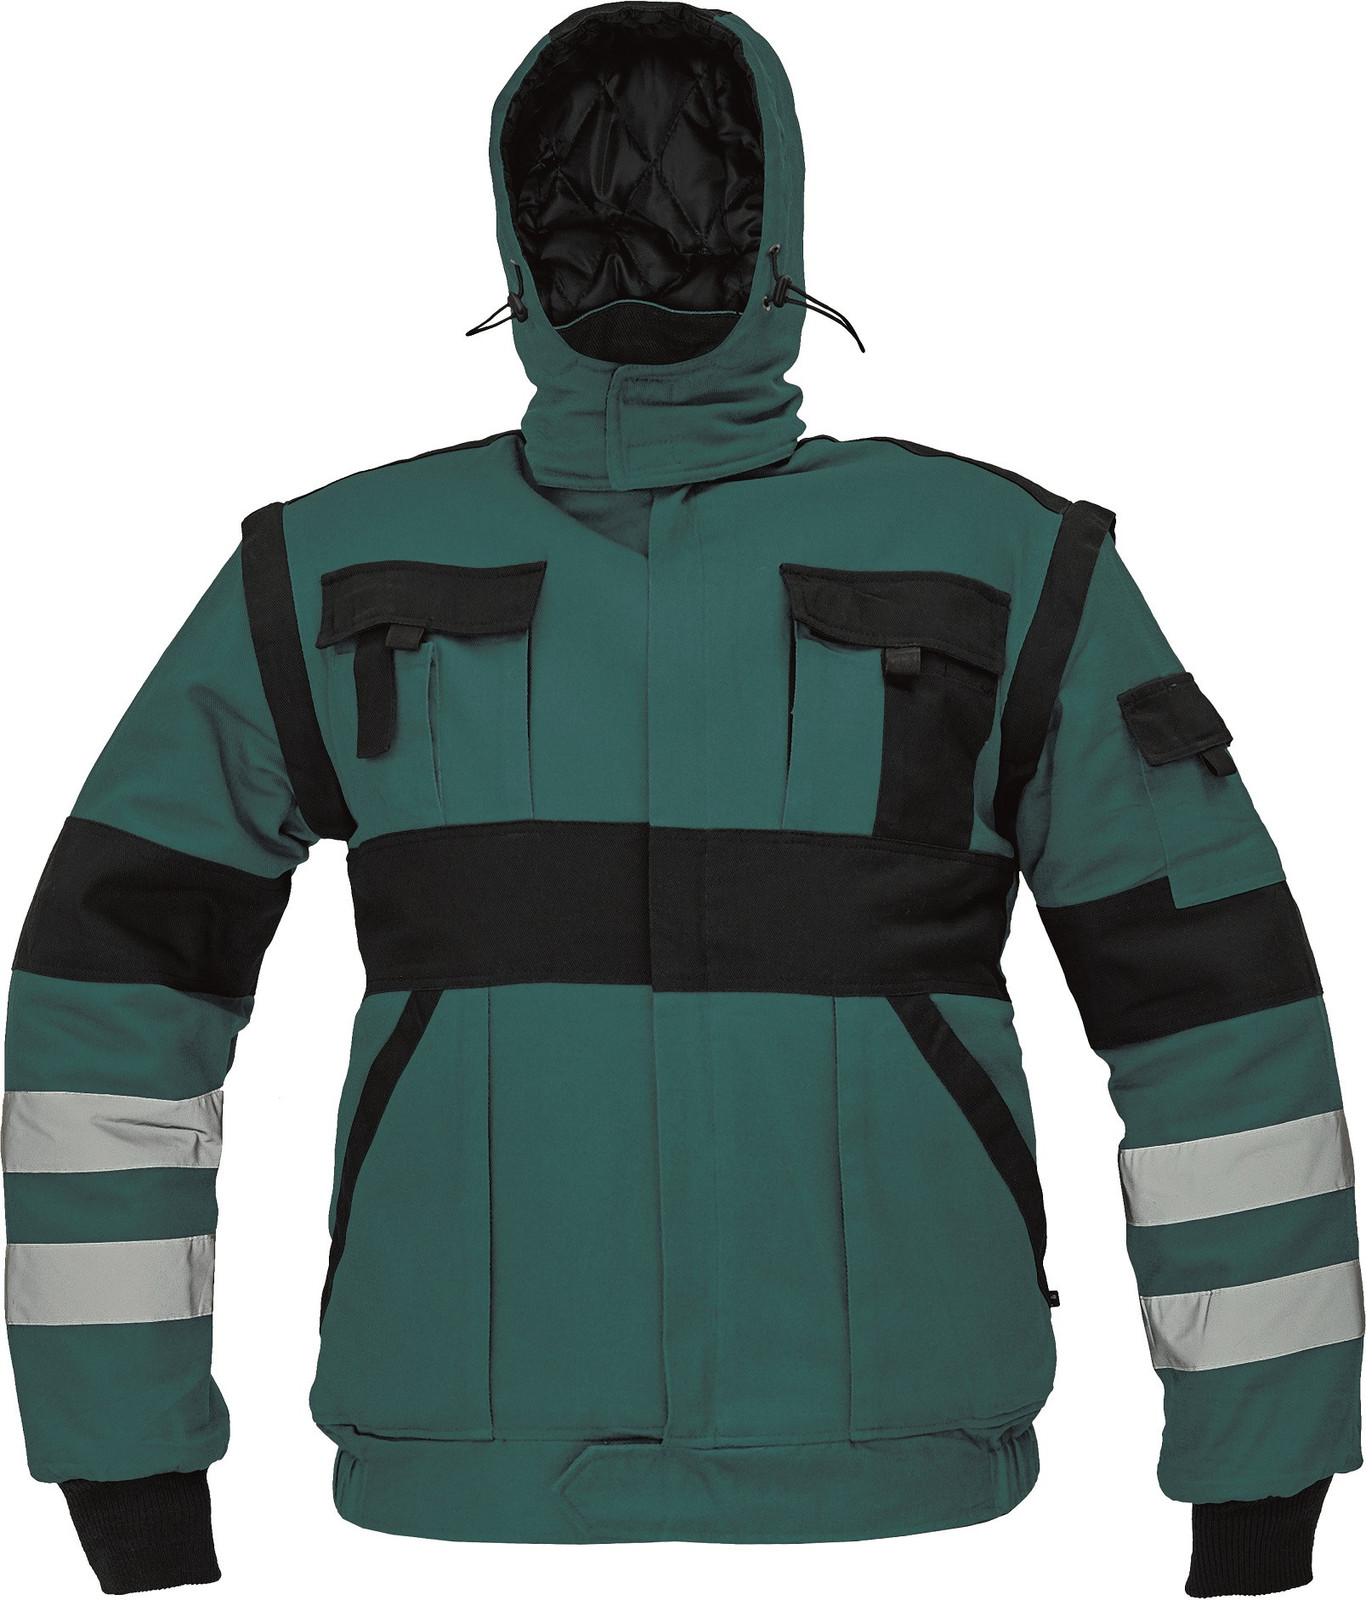 Zateplená montérková bunda Max Winter s reflexnými pruhmi 2v1 - veľkosť: 60, farba: zelená/čierna